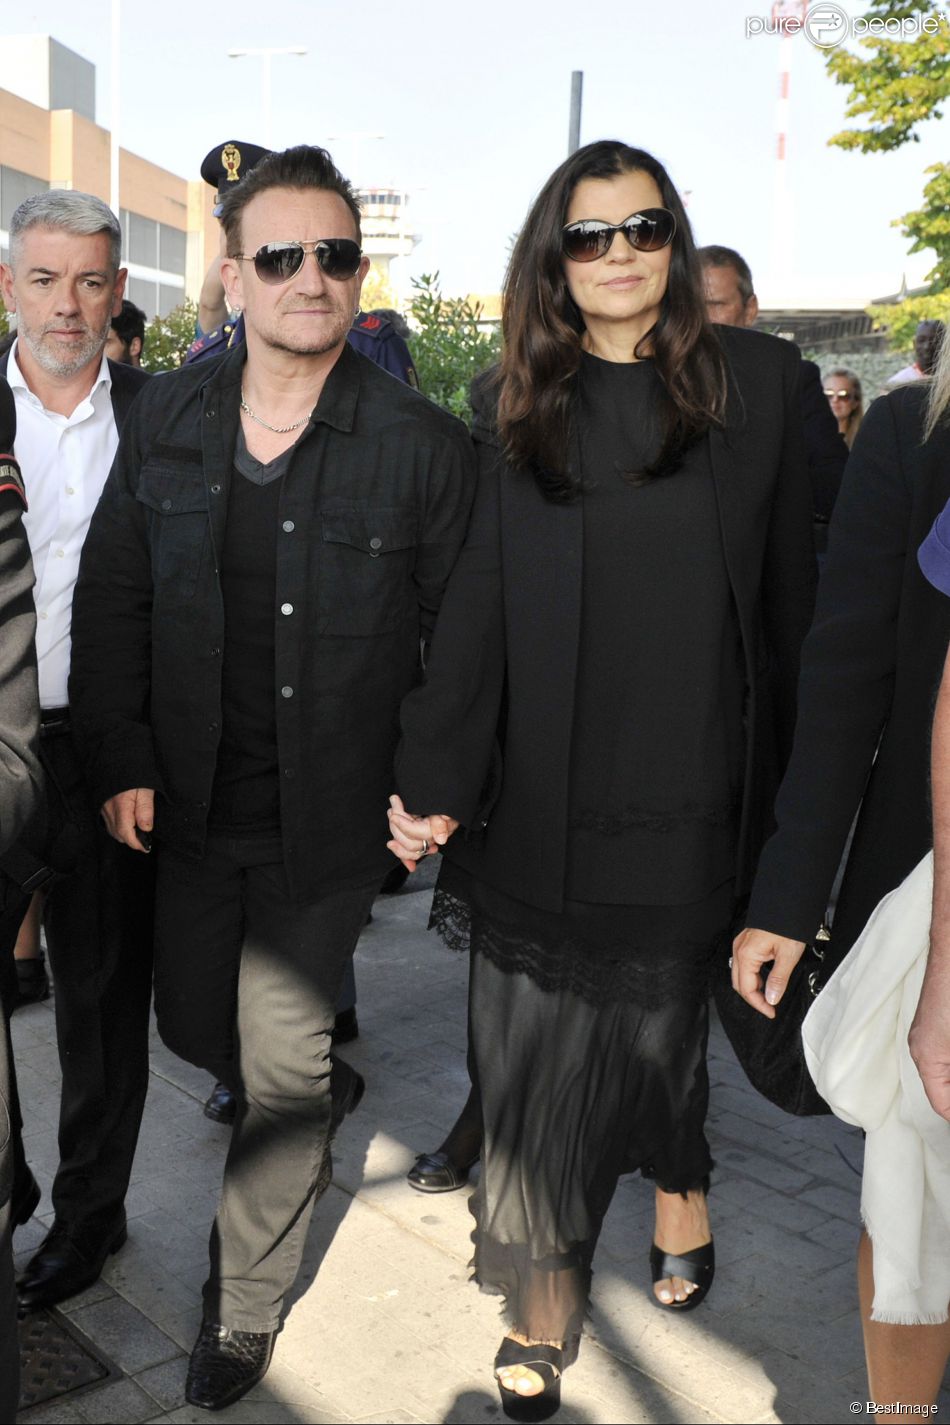  Le chanteur Bono et sa femme Ali Hewson arrivent &amp;agrave; Venise, le 27 septembre 2014 pour assister au mariage de George Clooney et Amal Alamuddin.&amp;nbsp; 